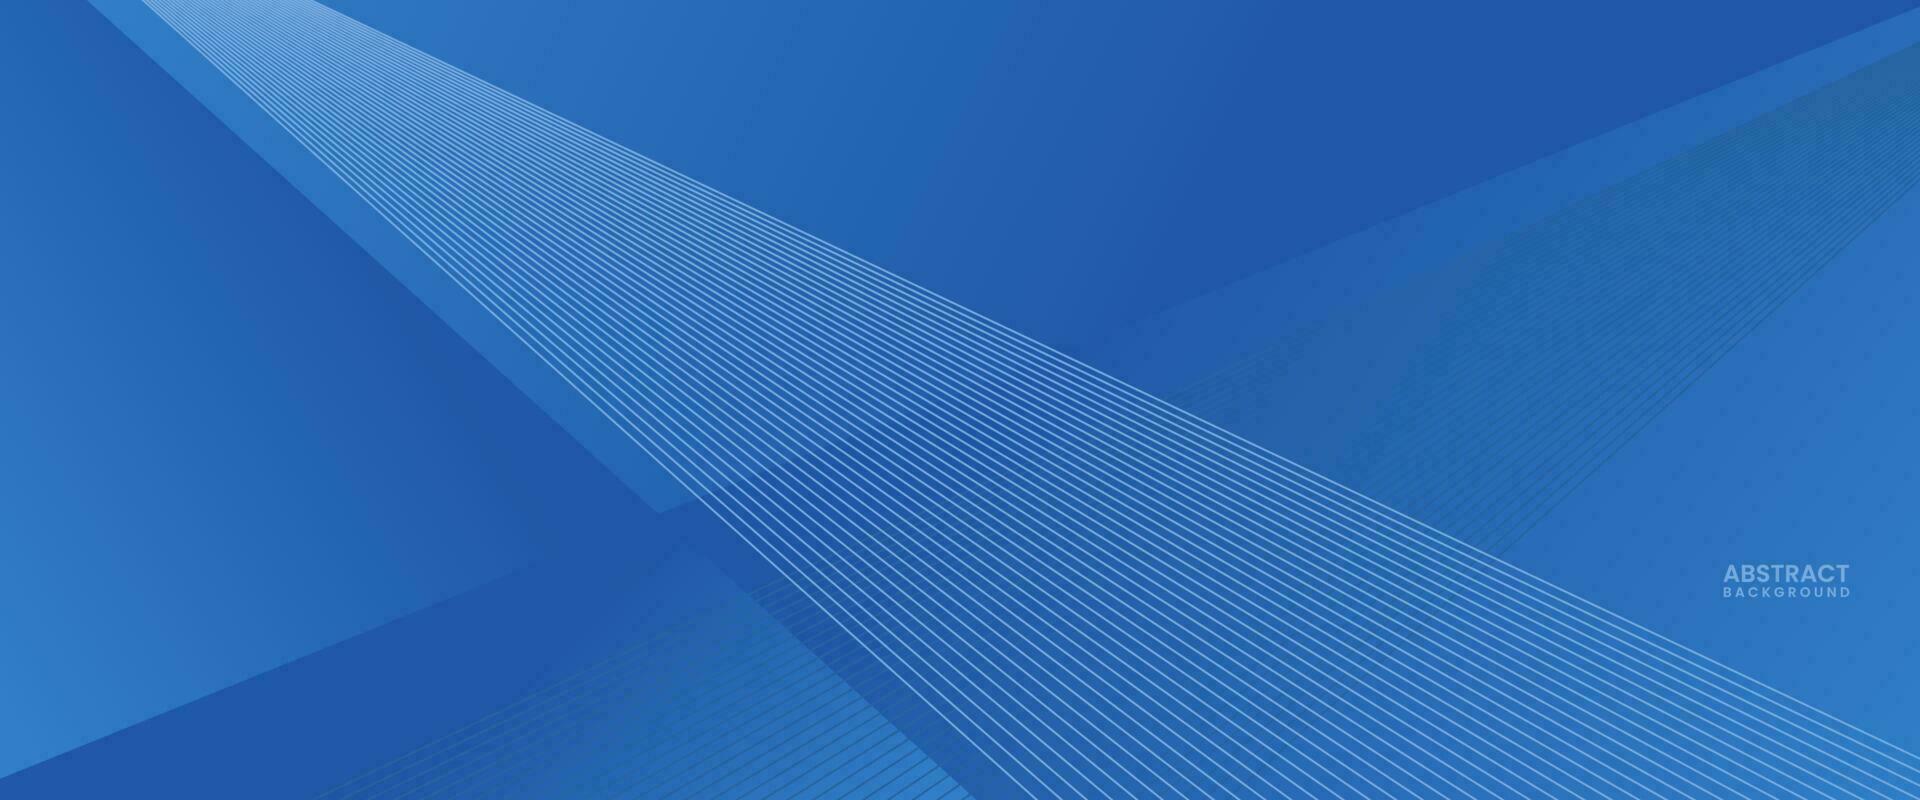 abstract blauw kleurrijk helling achtergrond vector illustratie